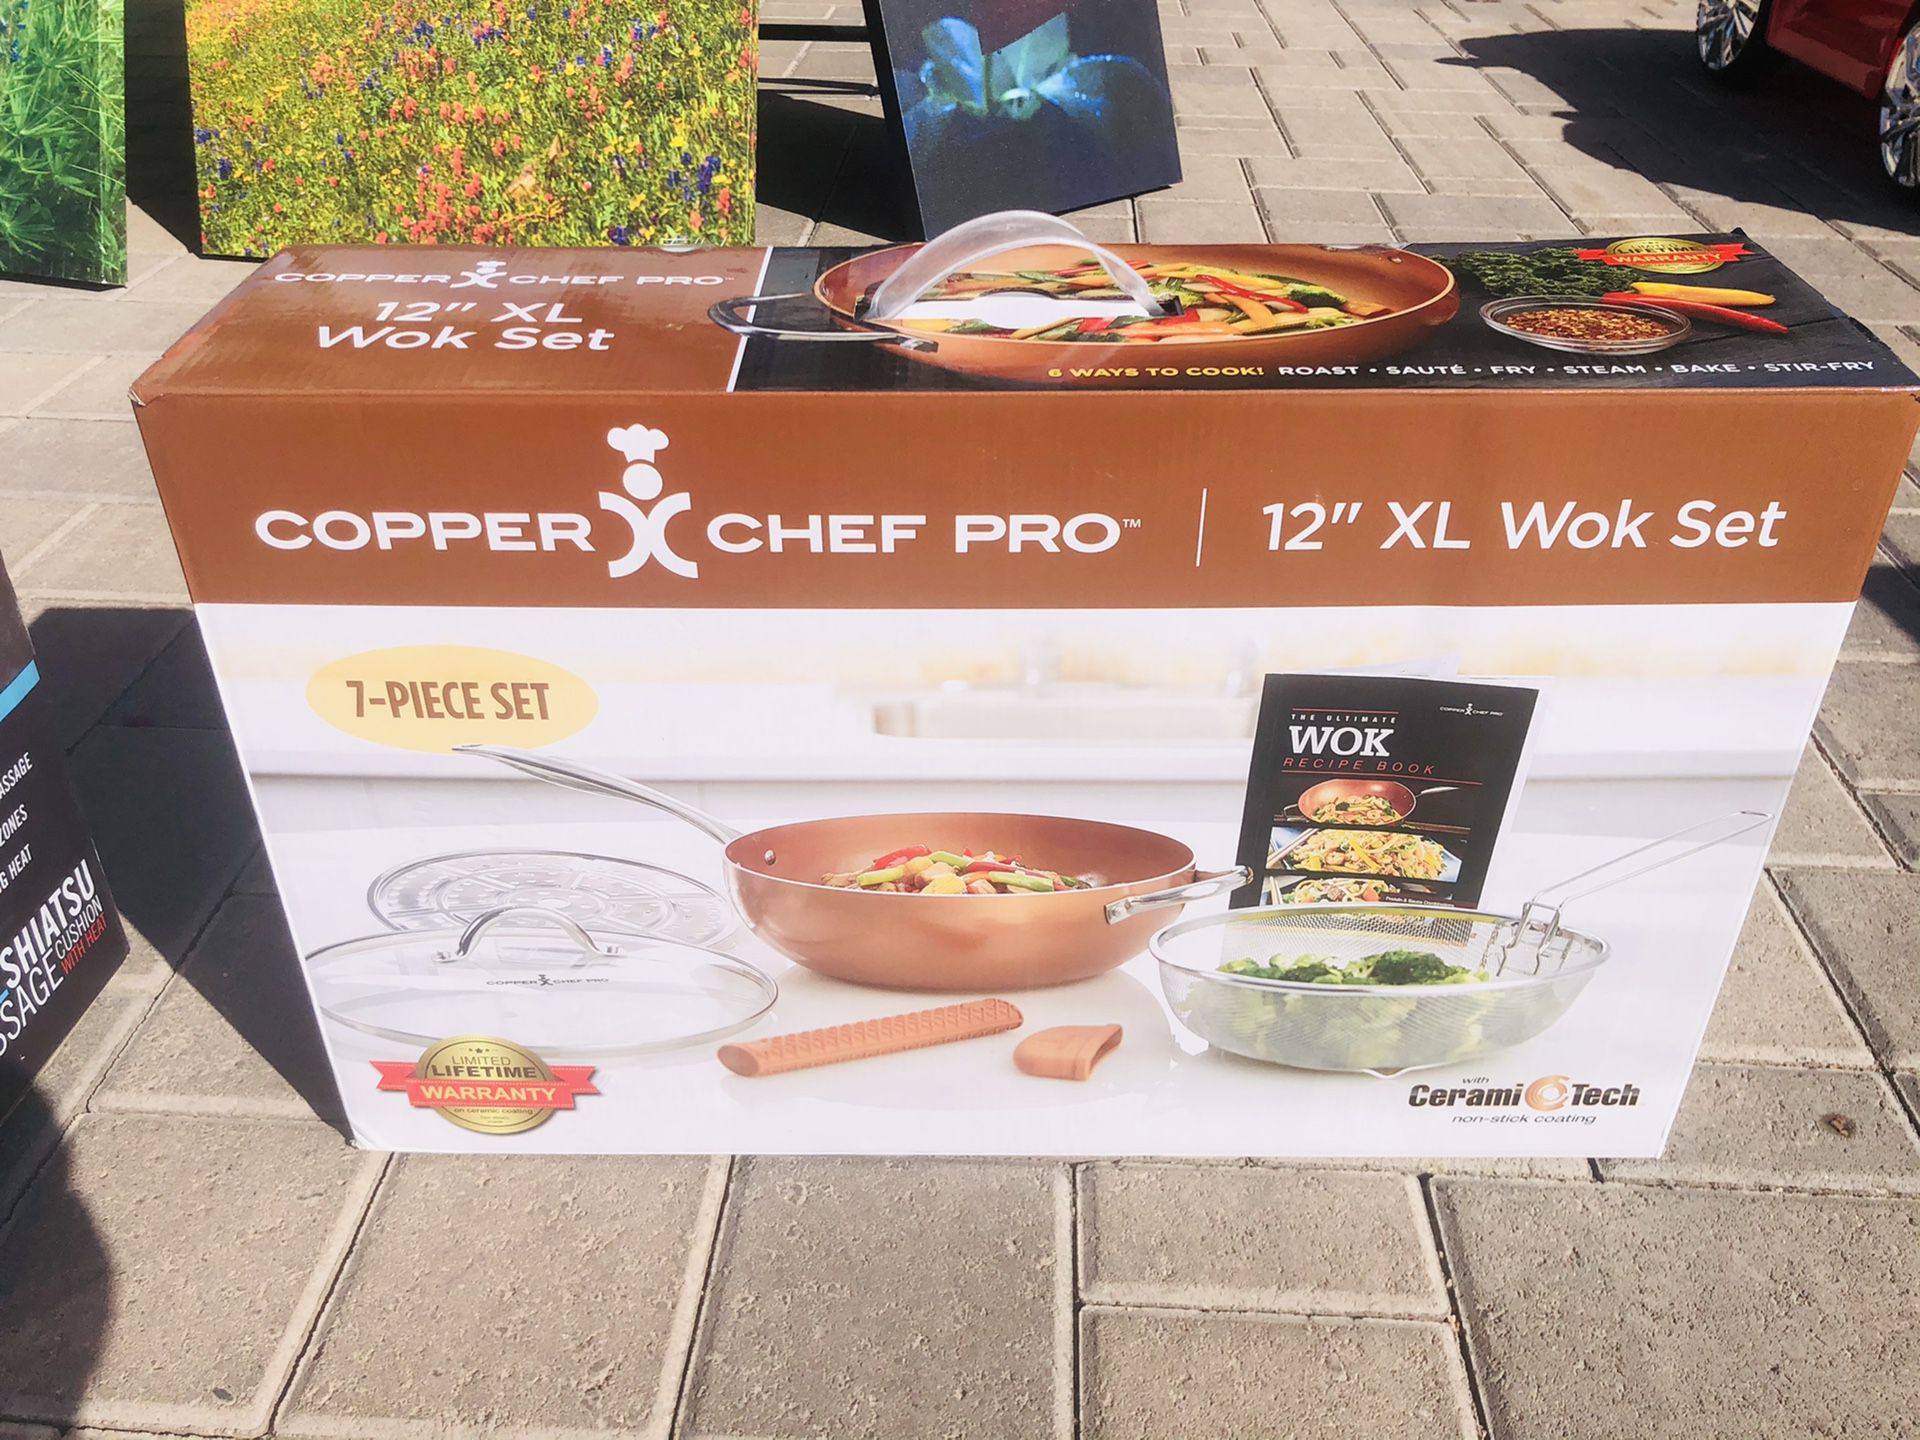 Copper chef pro 7-piece wok set